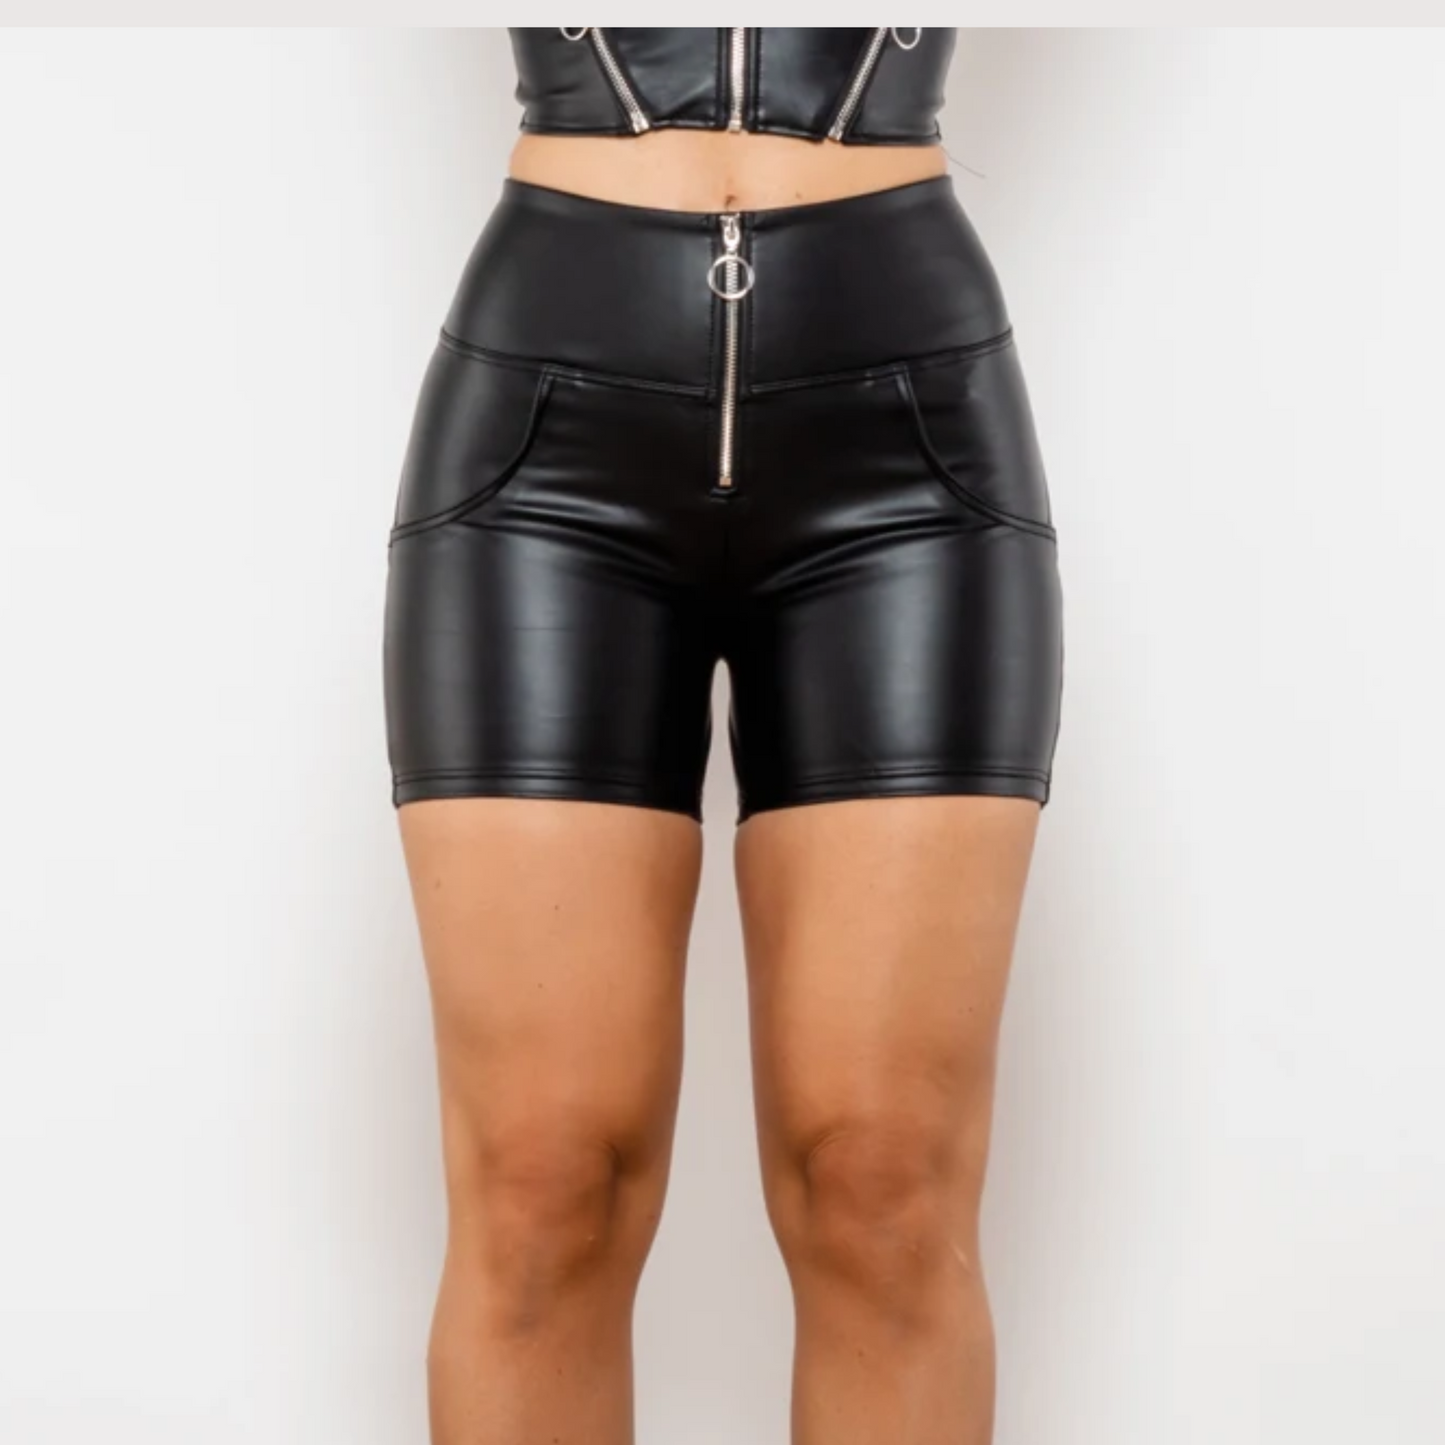 Cheeky Matte Black High Waist Faux Leather Butt Lift Shorts